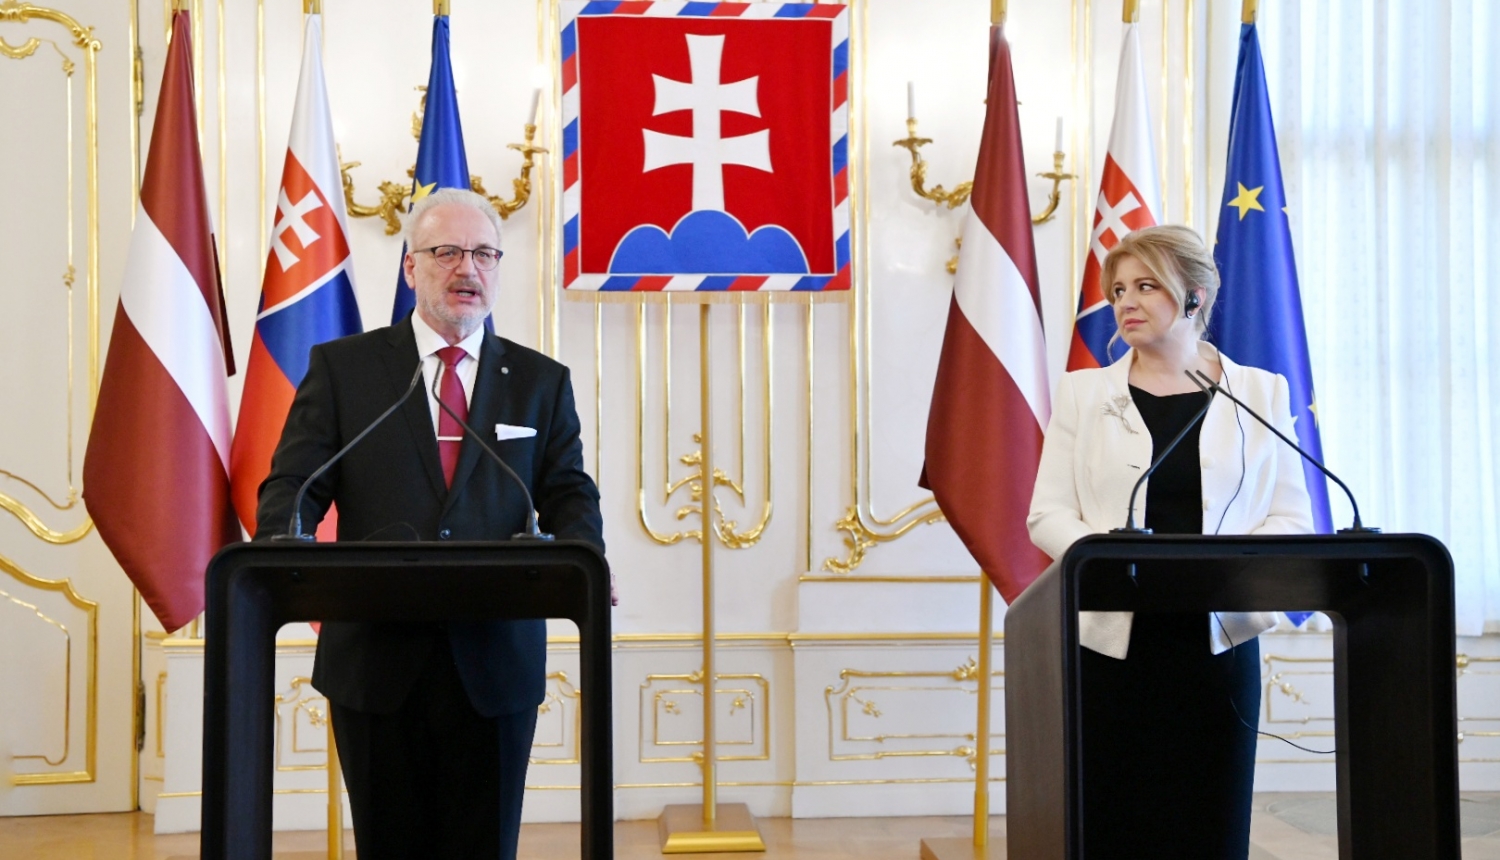 Valsts prezidenta Egila Levita oficiālā vizīte Slovākijā. Preses konference pēc tikšanās ar Slovākijas prezidenti. 